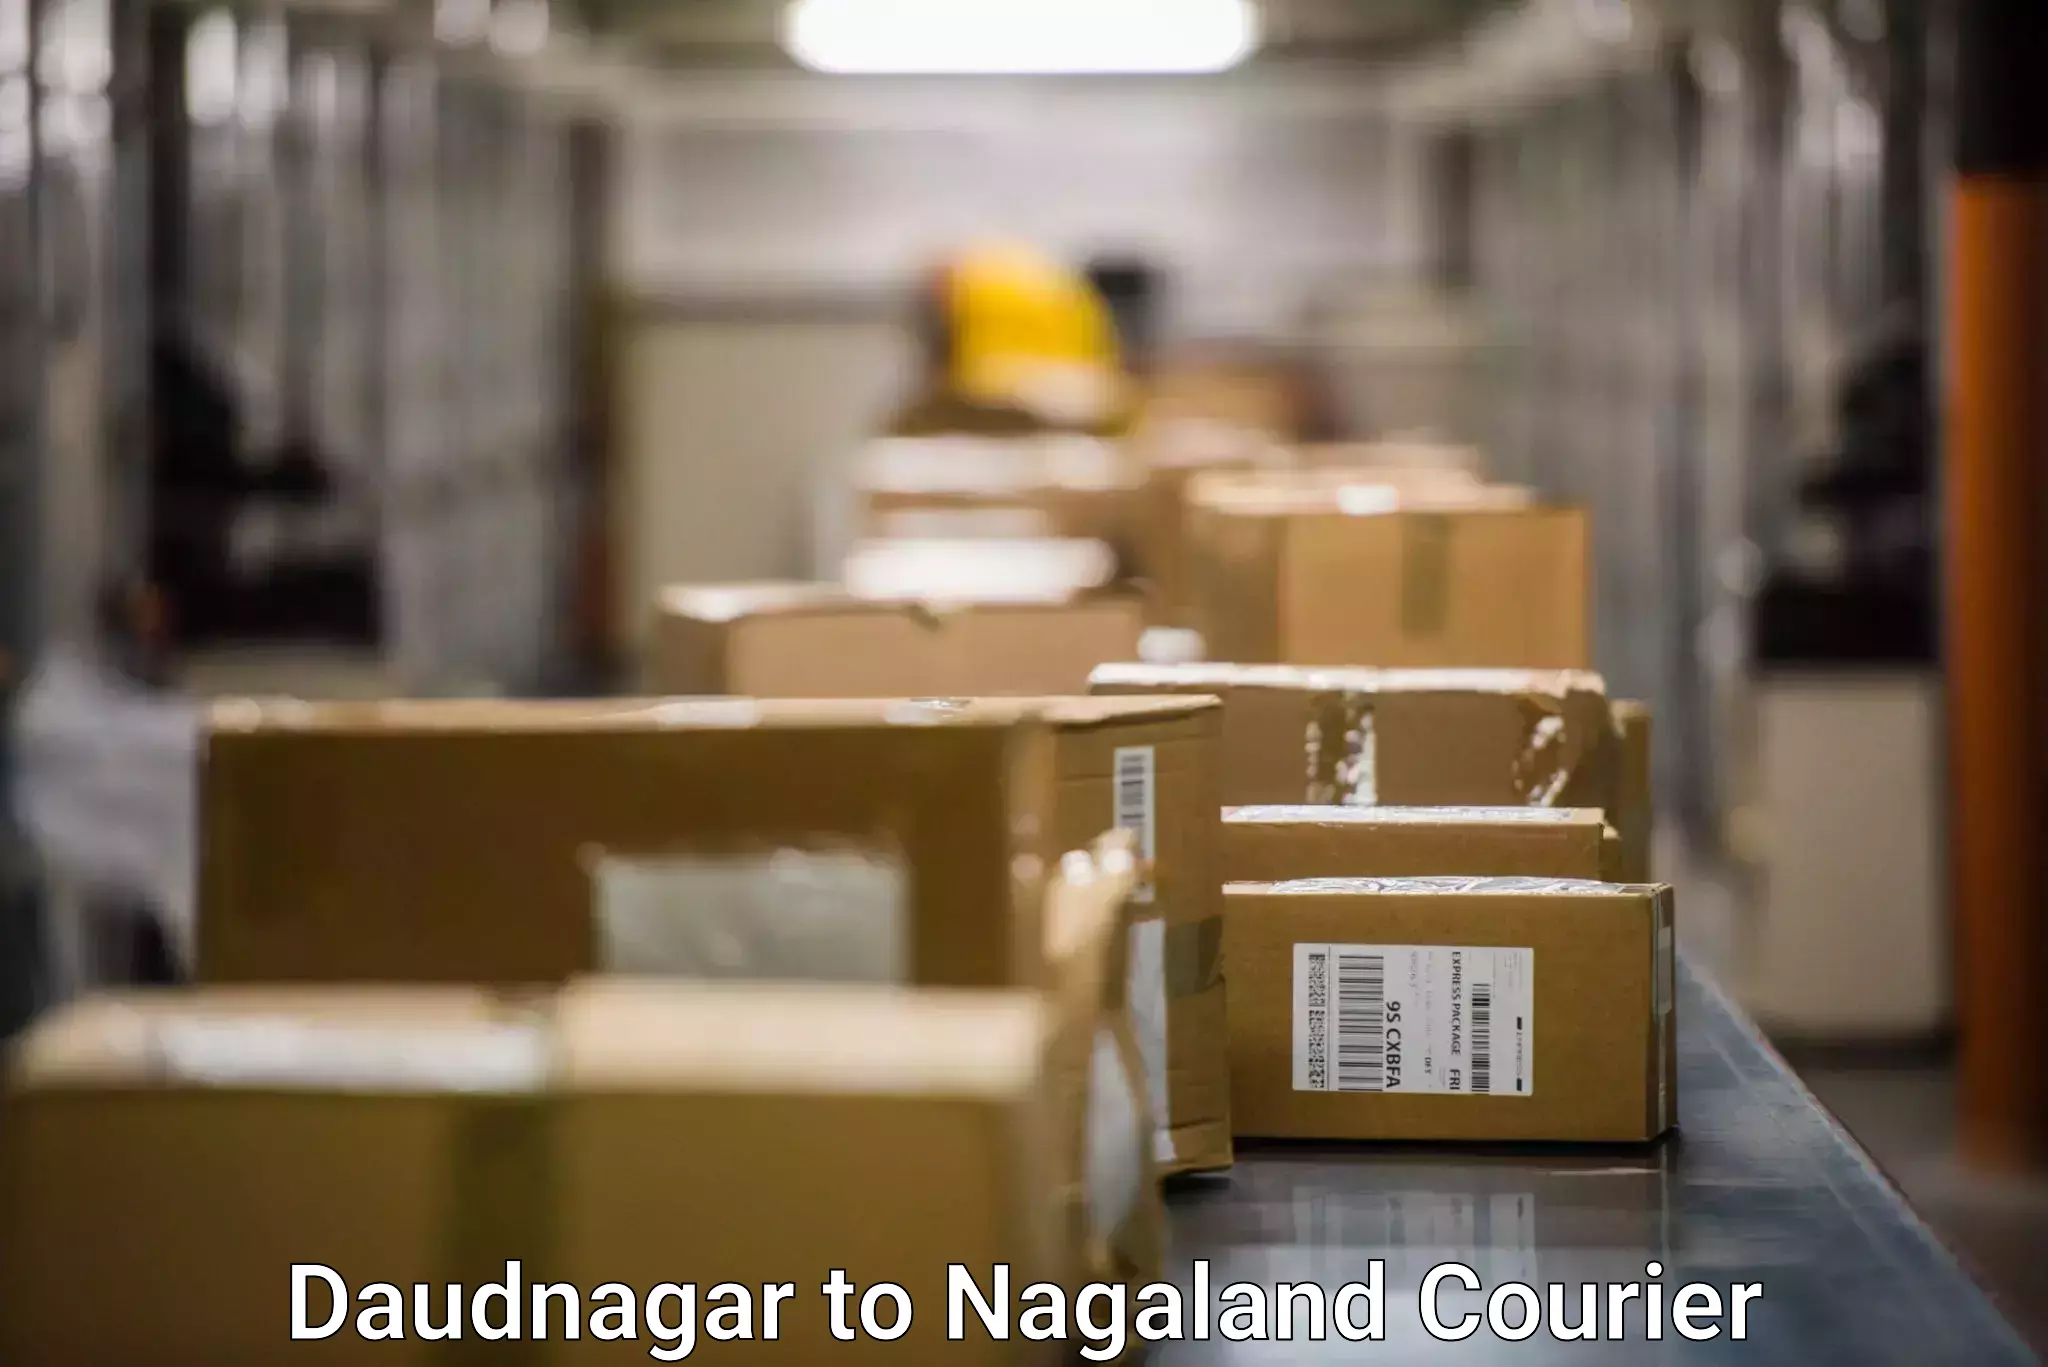 International parcel service Daudnagar to Phek